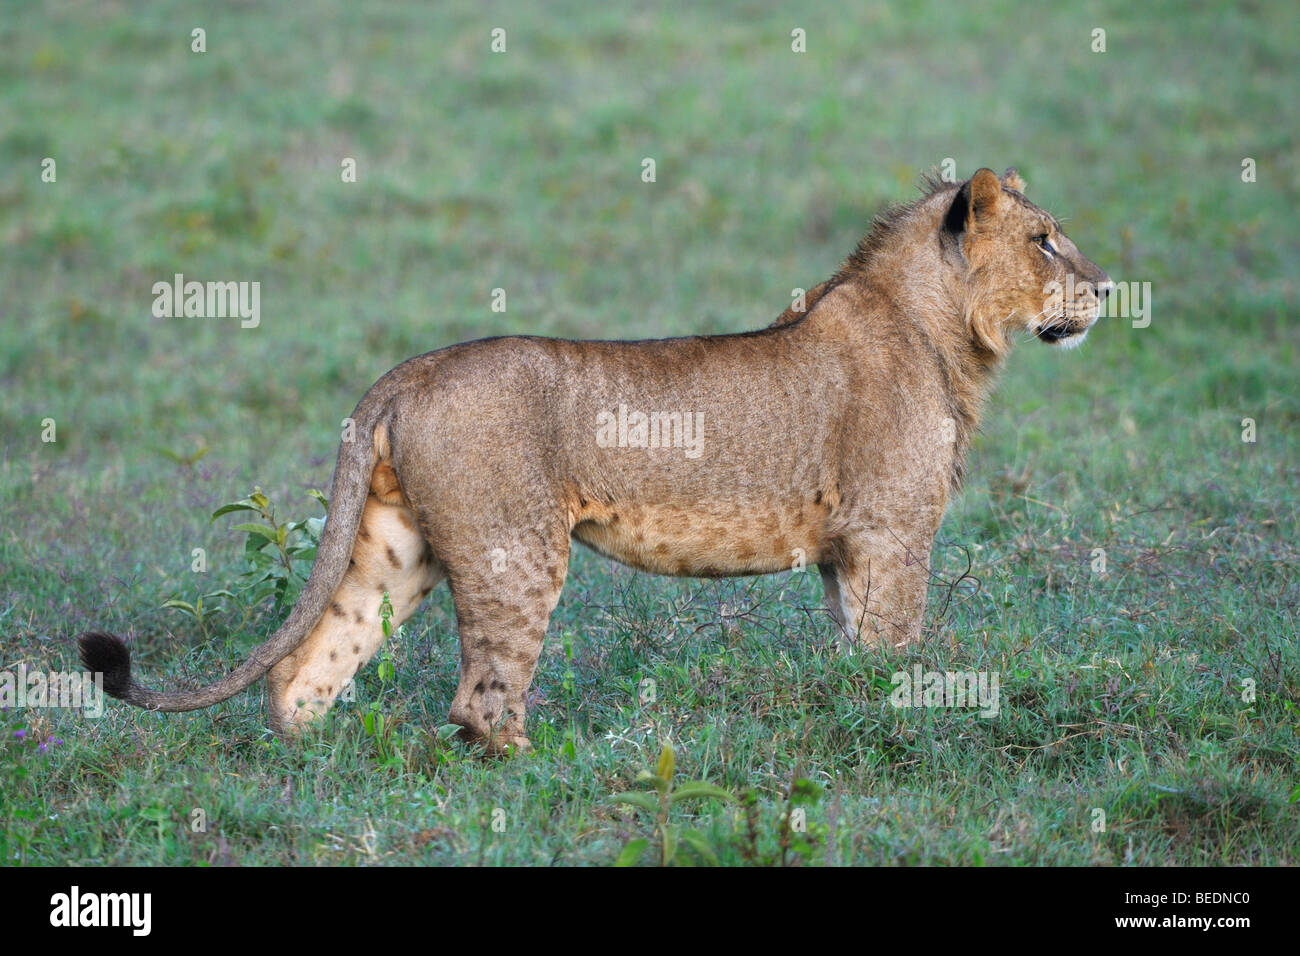 Lion (Panthera leo), Lake Nakuru, national park, Kenya, East Africa Stock Photo